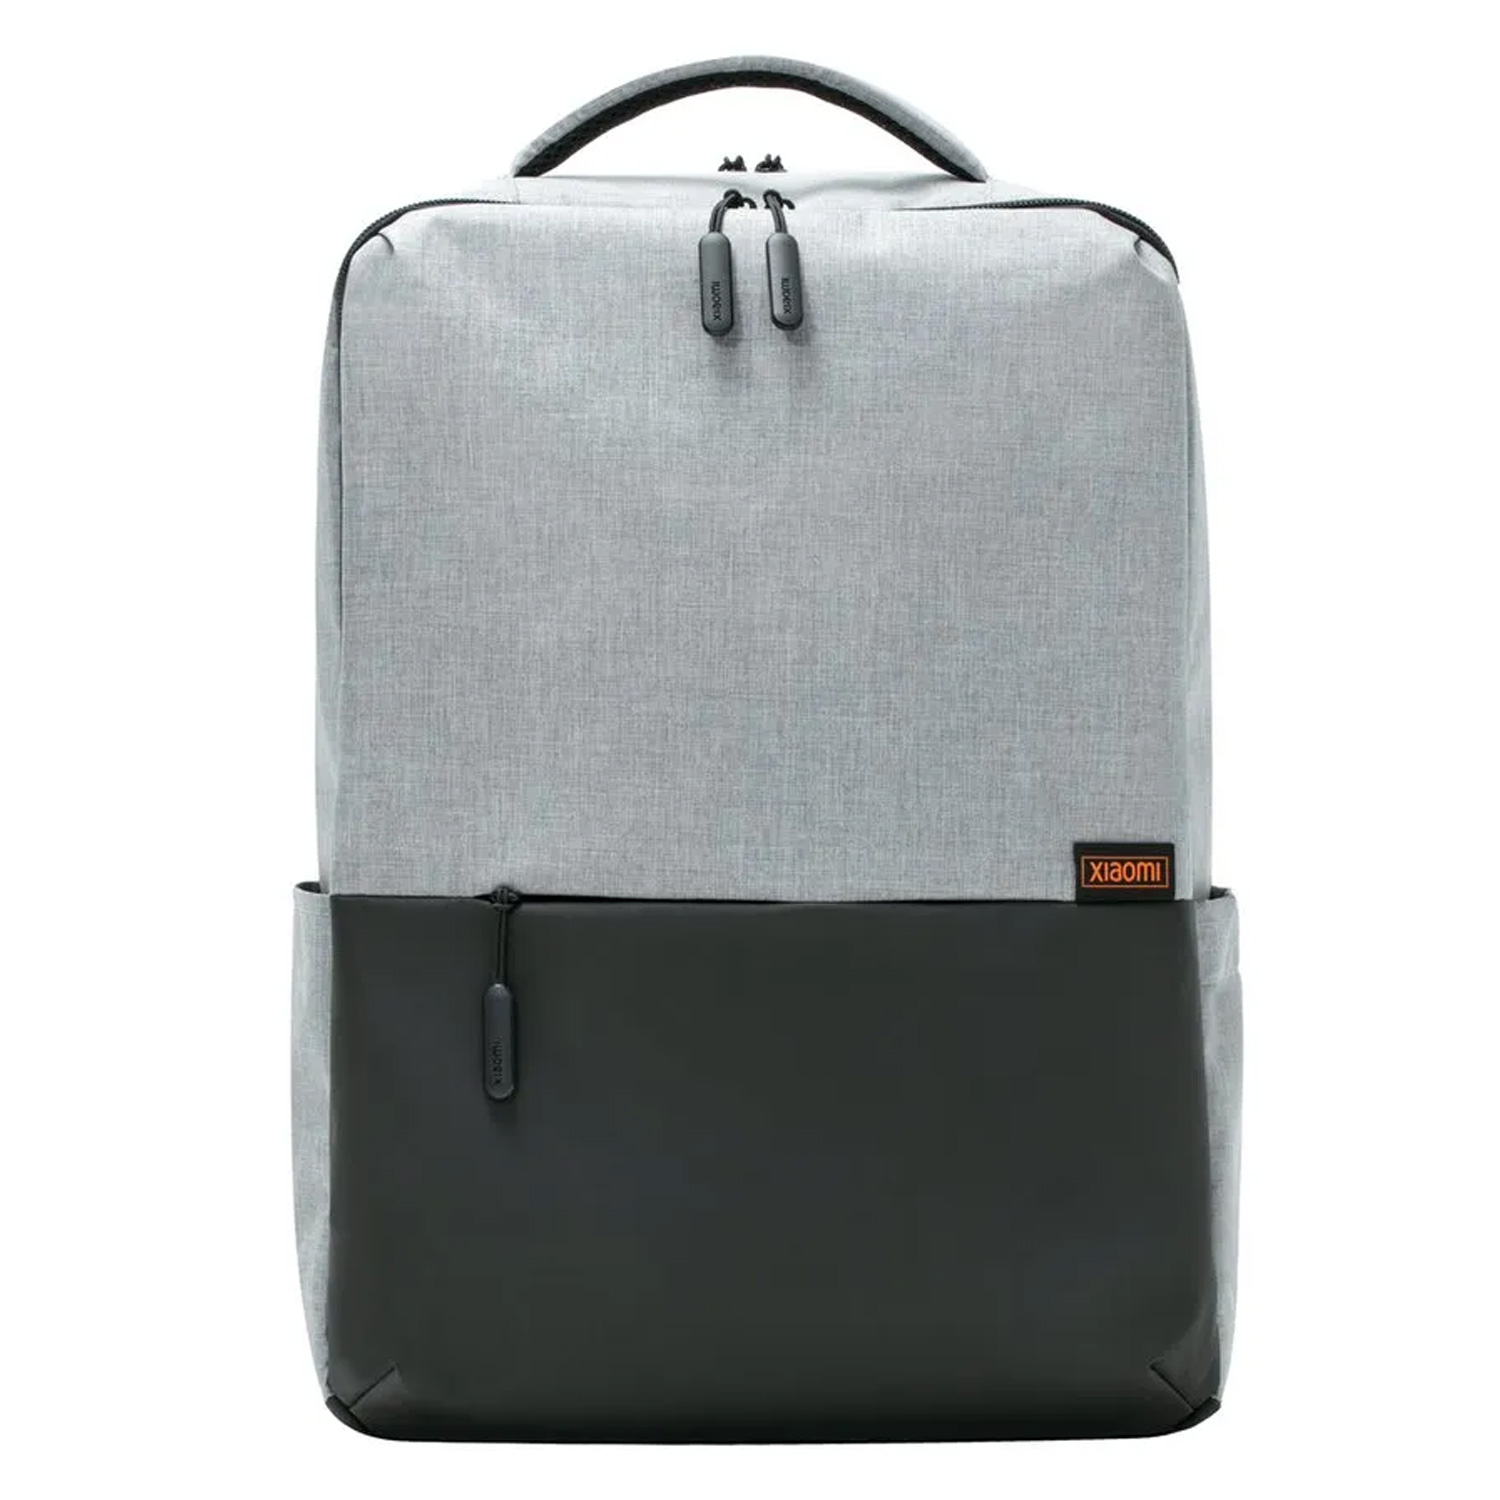 Mochila Xiaomi Commuter Backpack - Cinza Claro (XDLGX04)